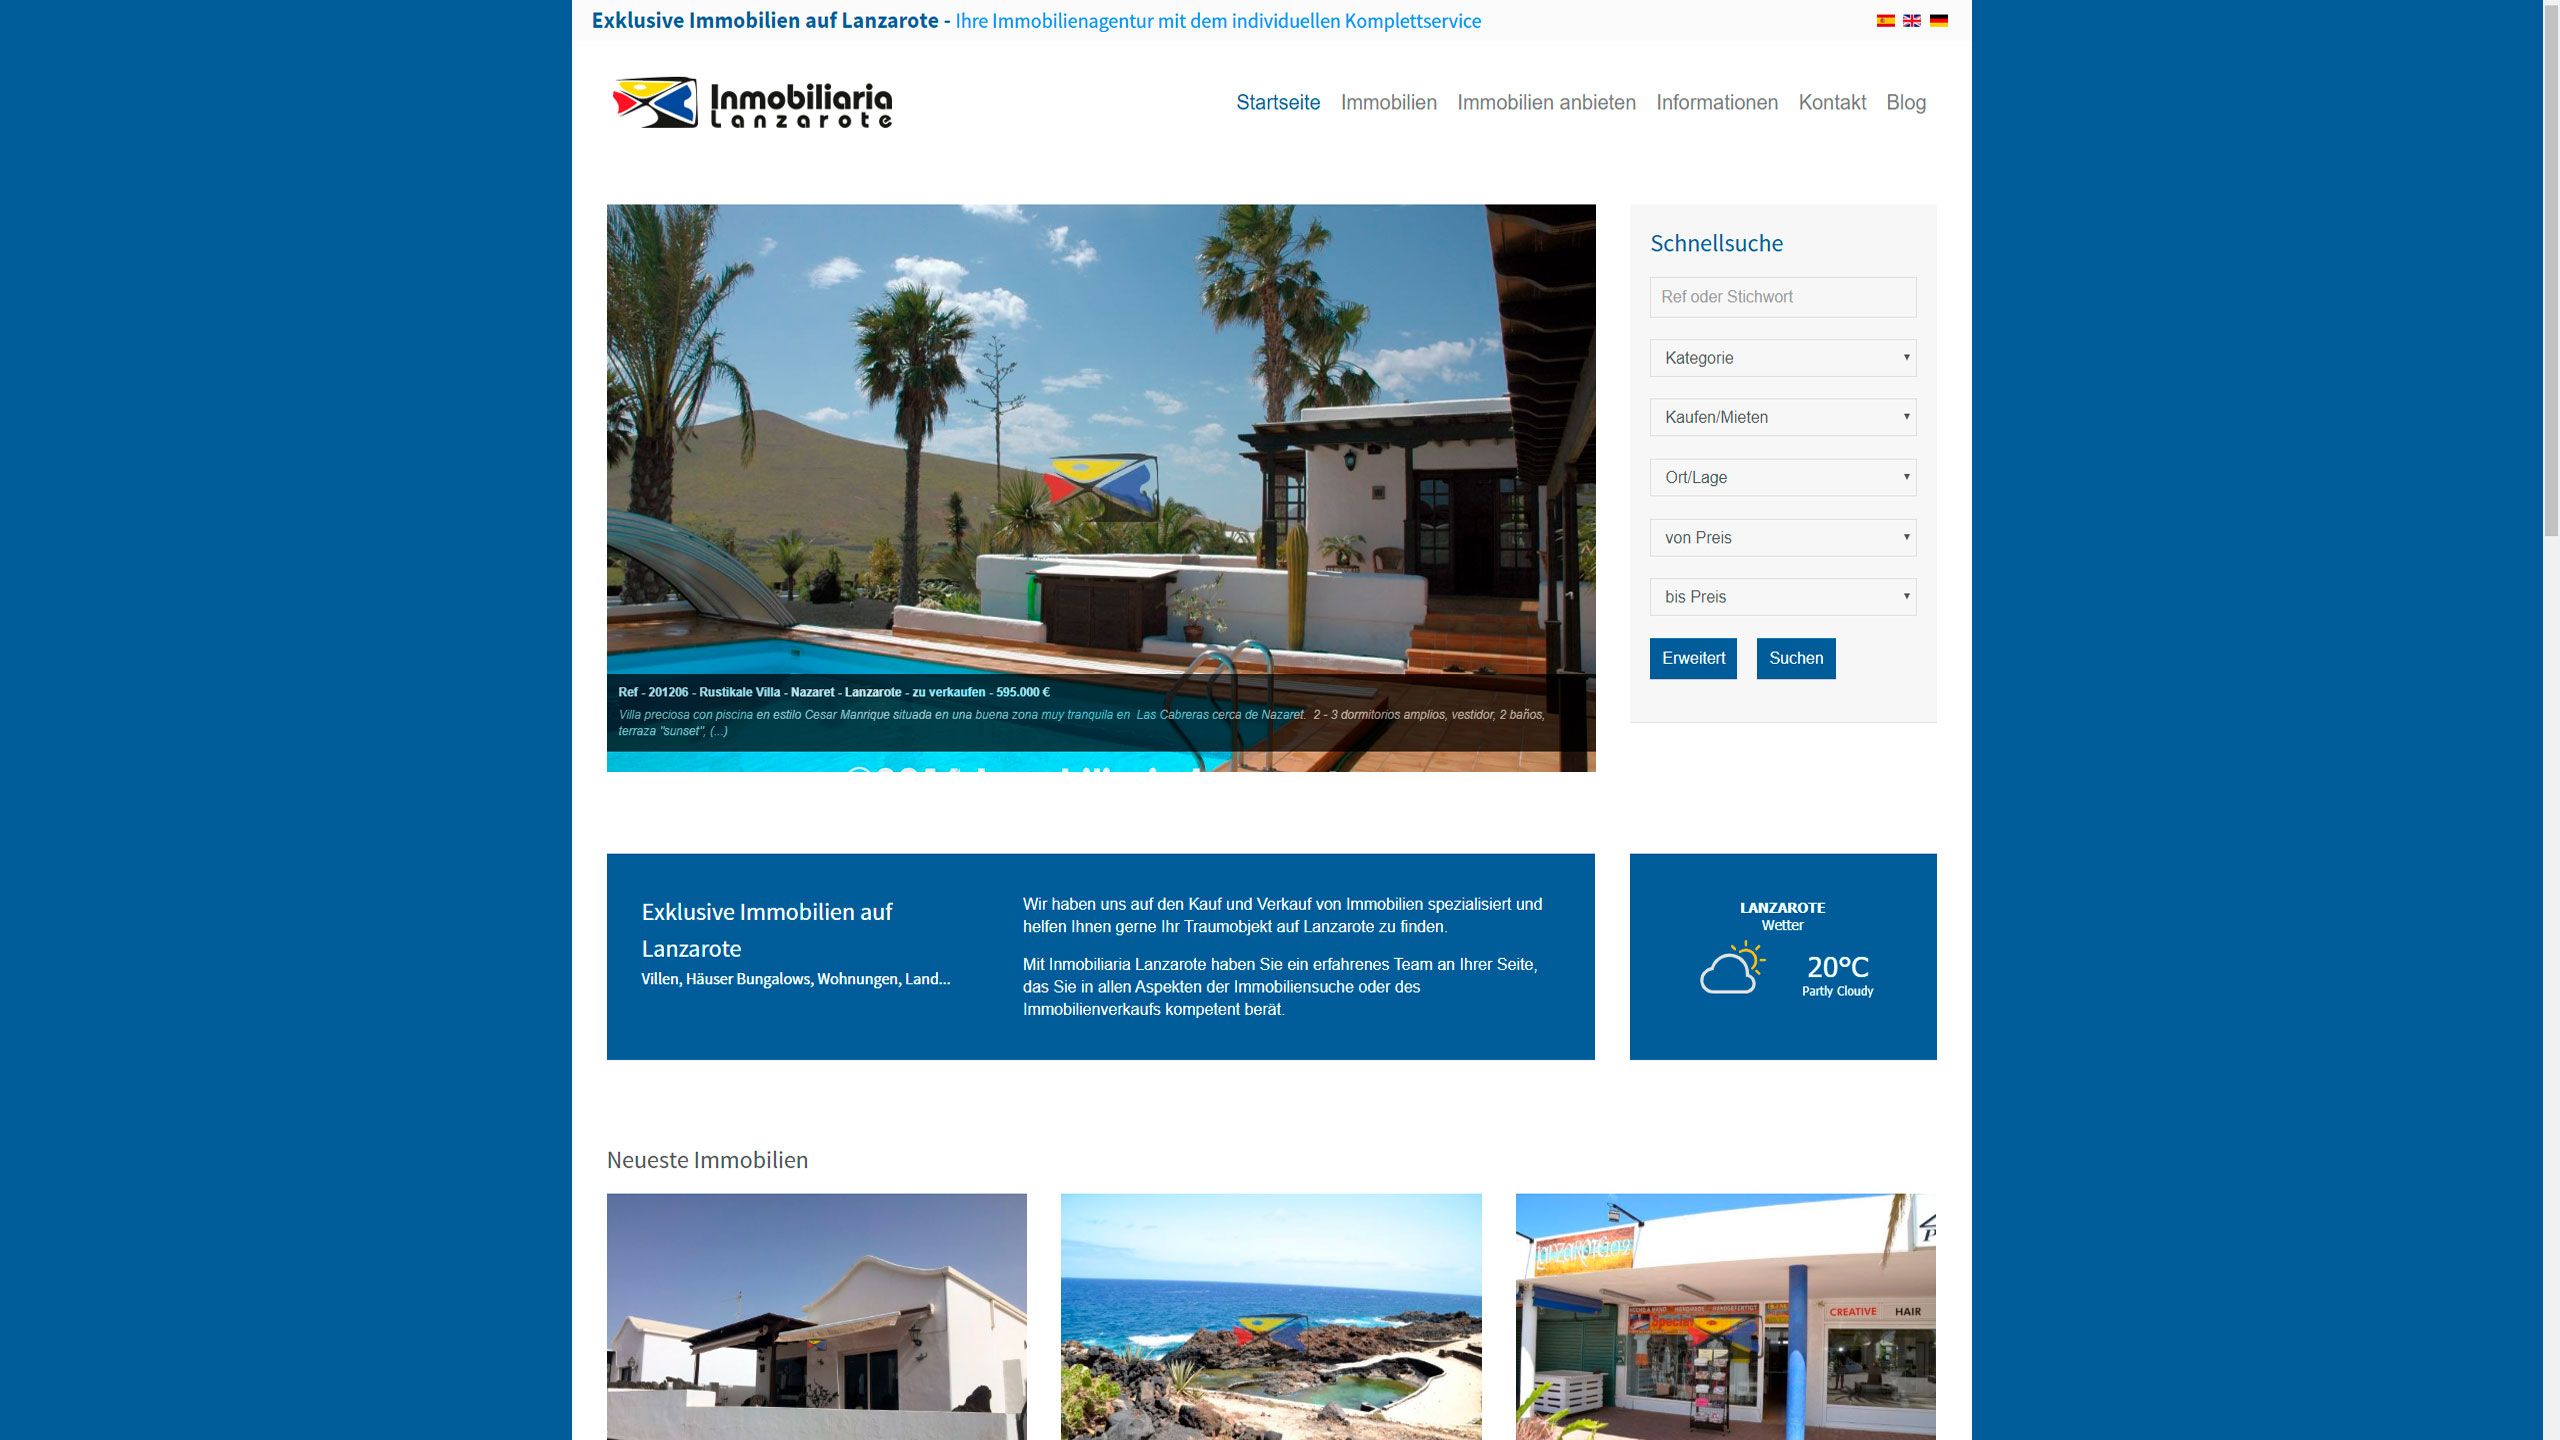 MediaFish Webdesign - Inmobiliaria Lanzarote